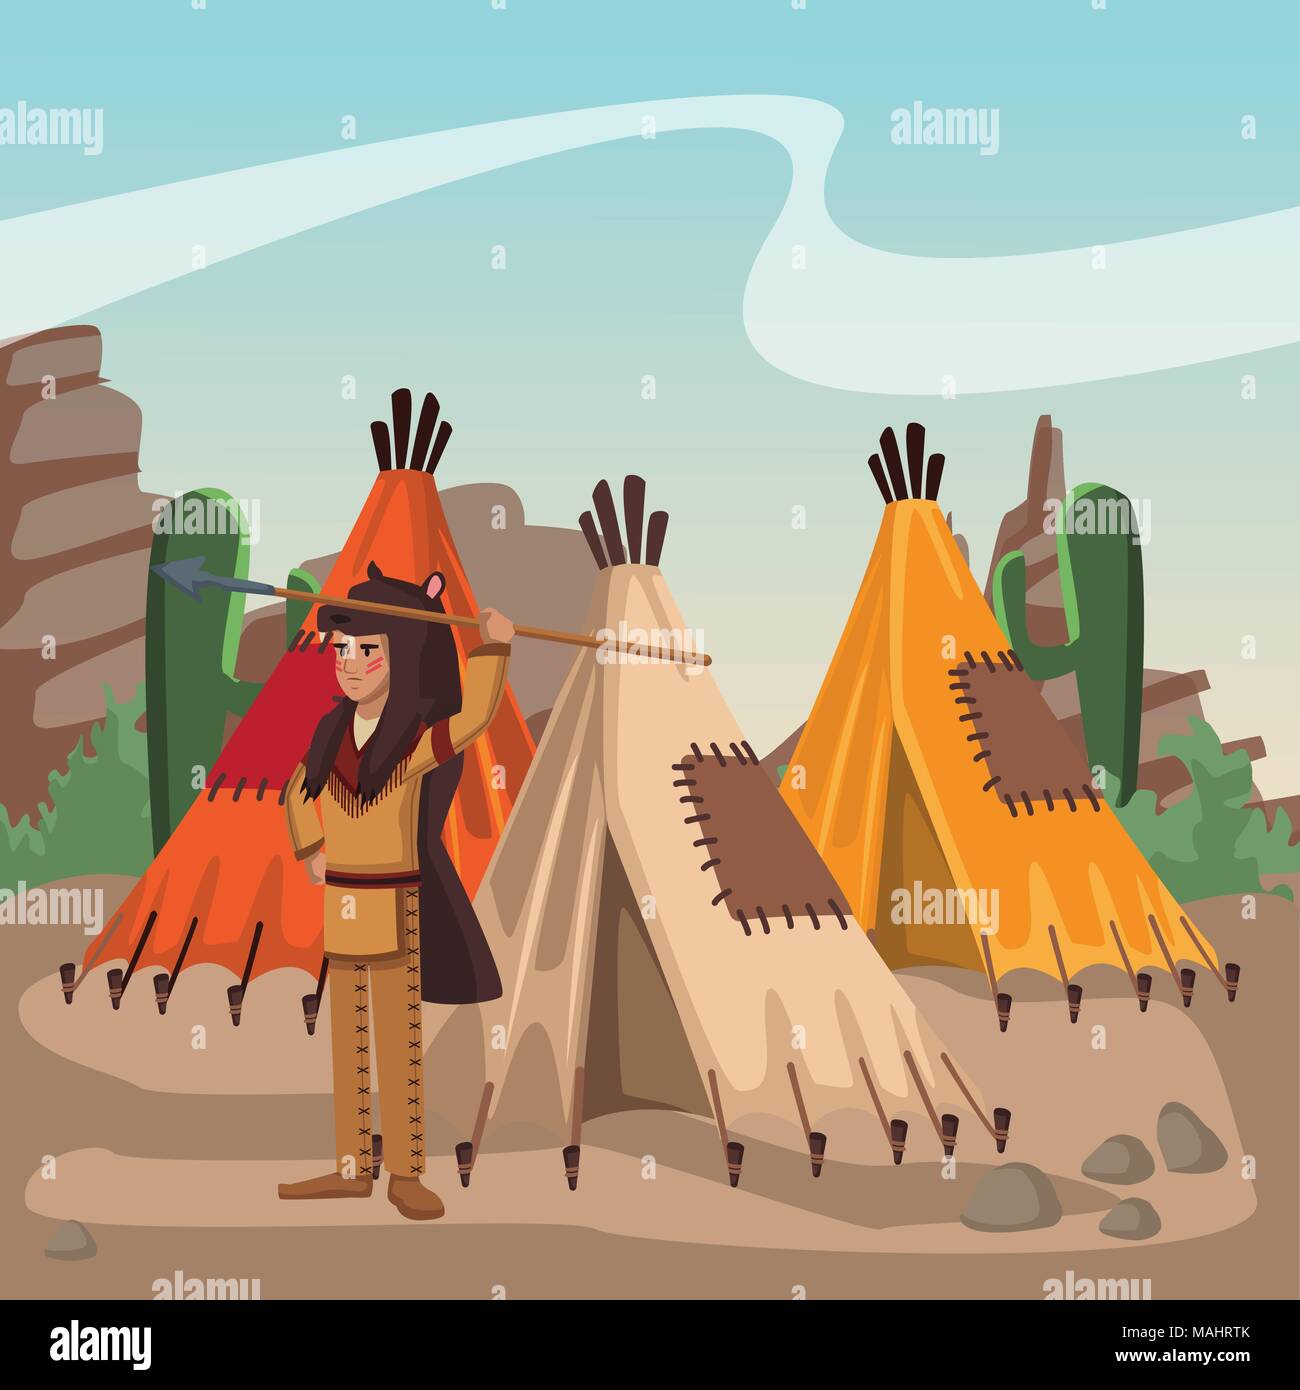 American Indian presso il Village Illustrazione Vettoriale